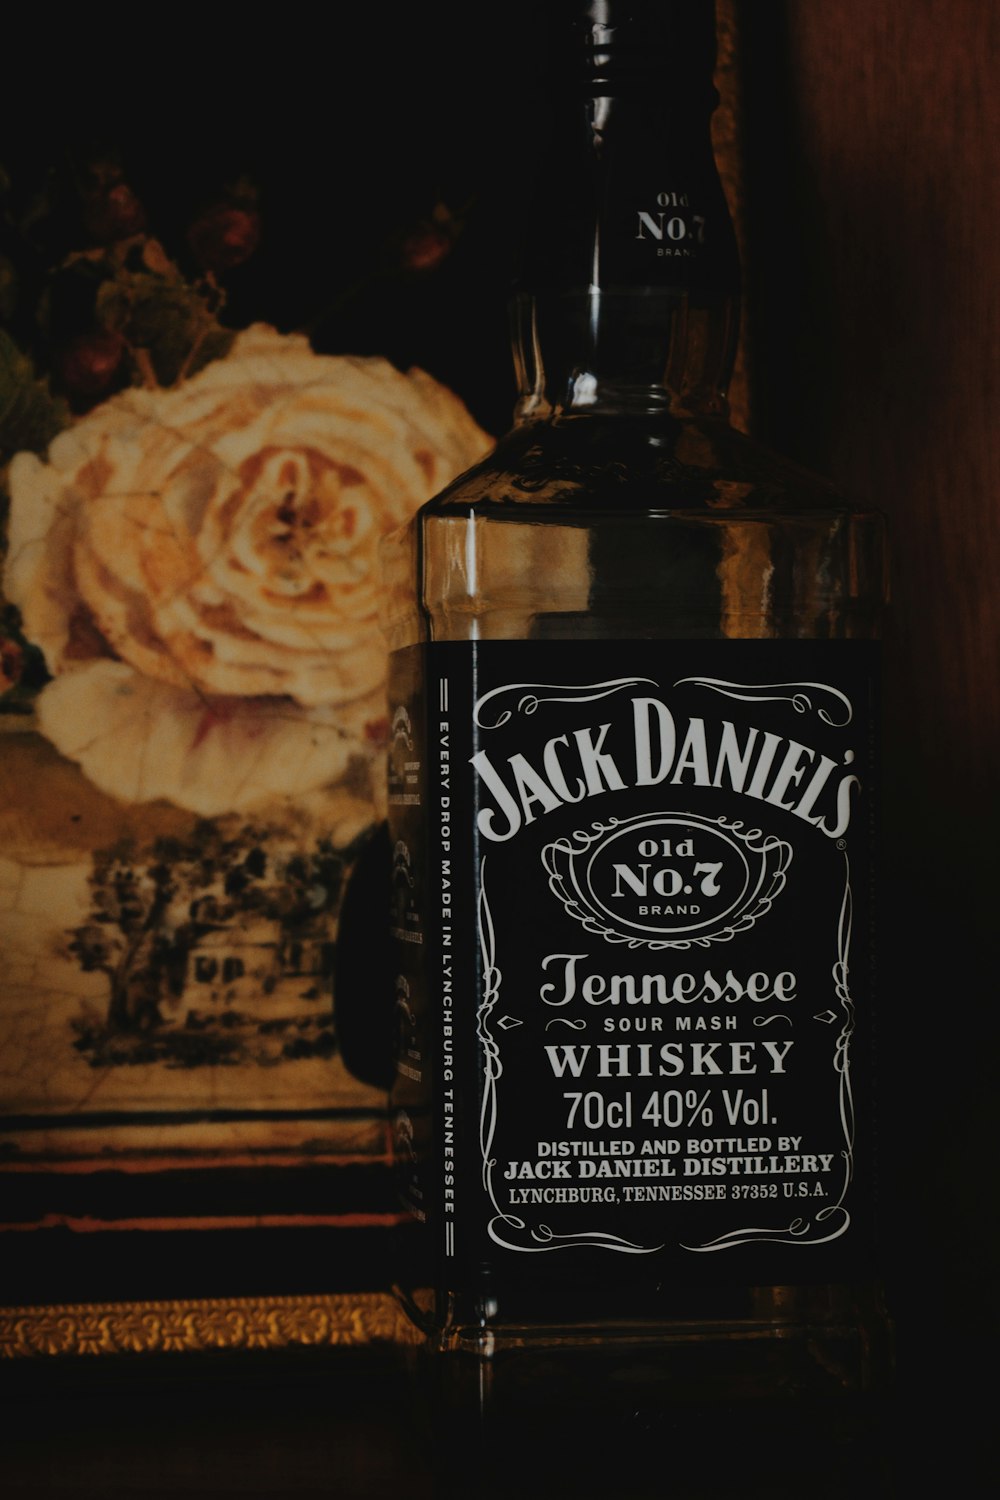 Bottiglia Jack Daniels